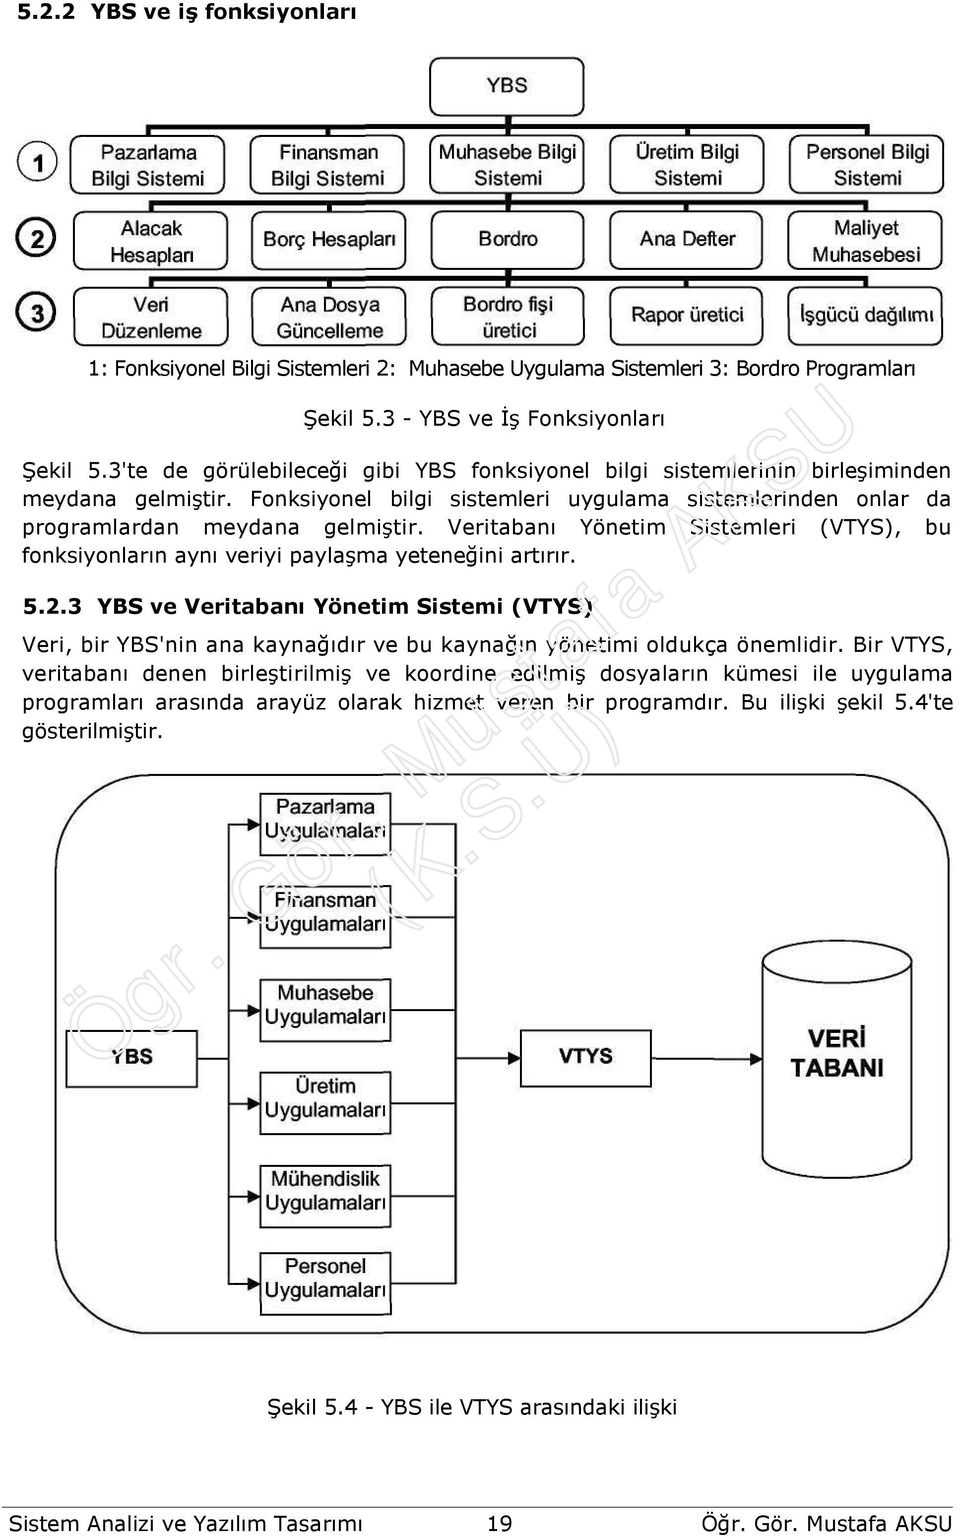 Veritabanı Yönetim Sistemleri (VTYS), bu fonksiyonların aynı veriyi paylaşma yeteneğini artırır. 5.2.